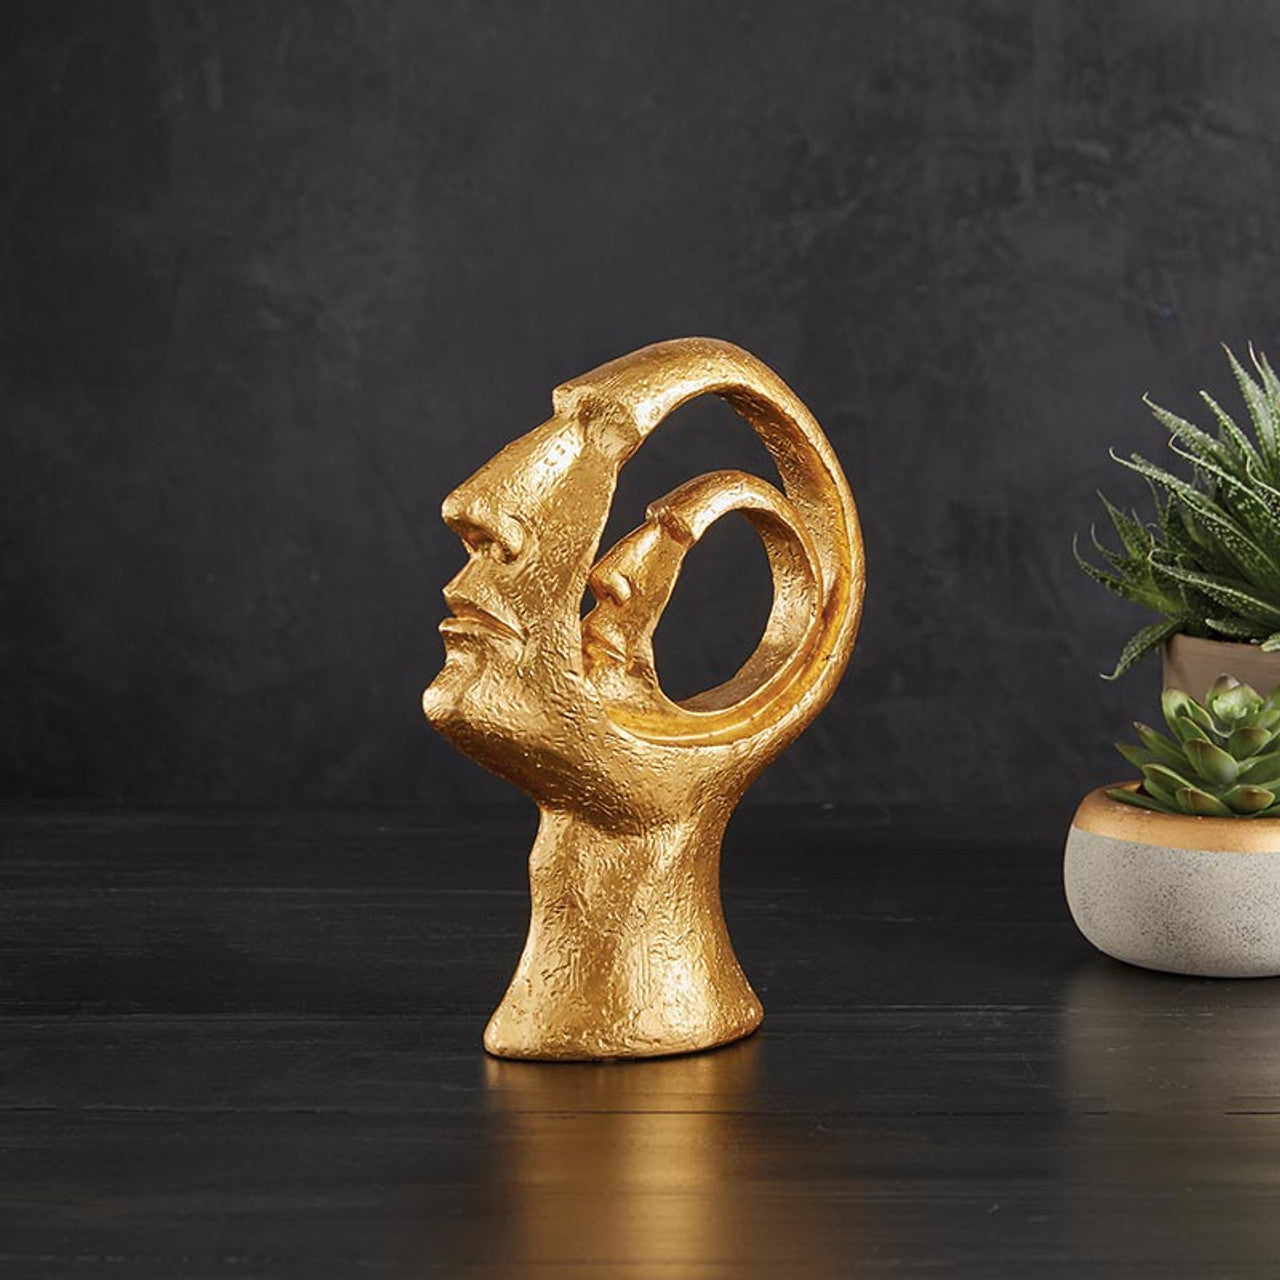 2 Face Gold Statue | Decorative Face Figure | 5" x 2" x 7"